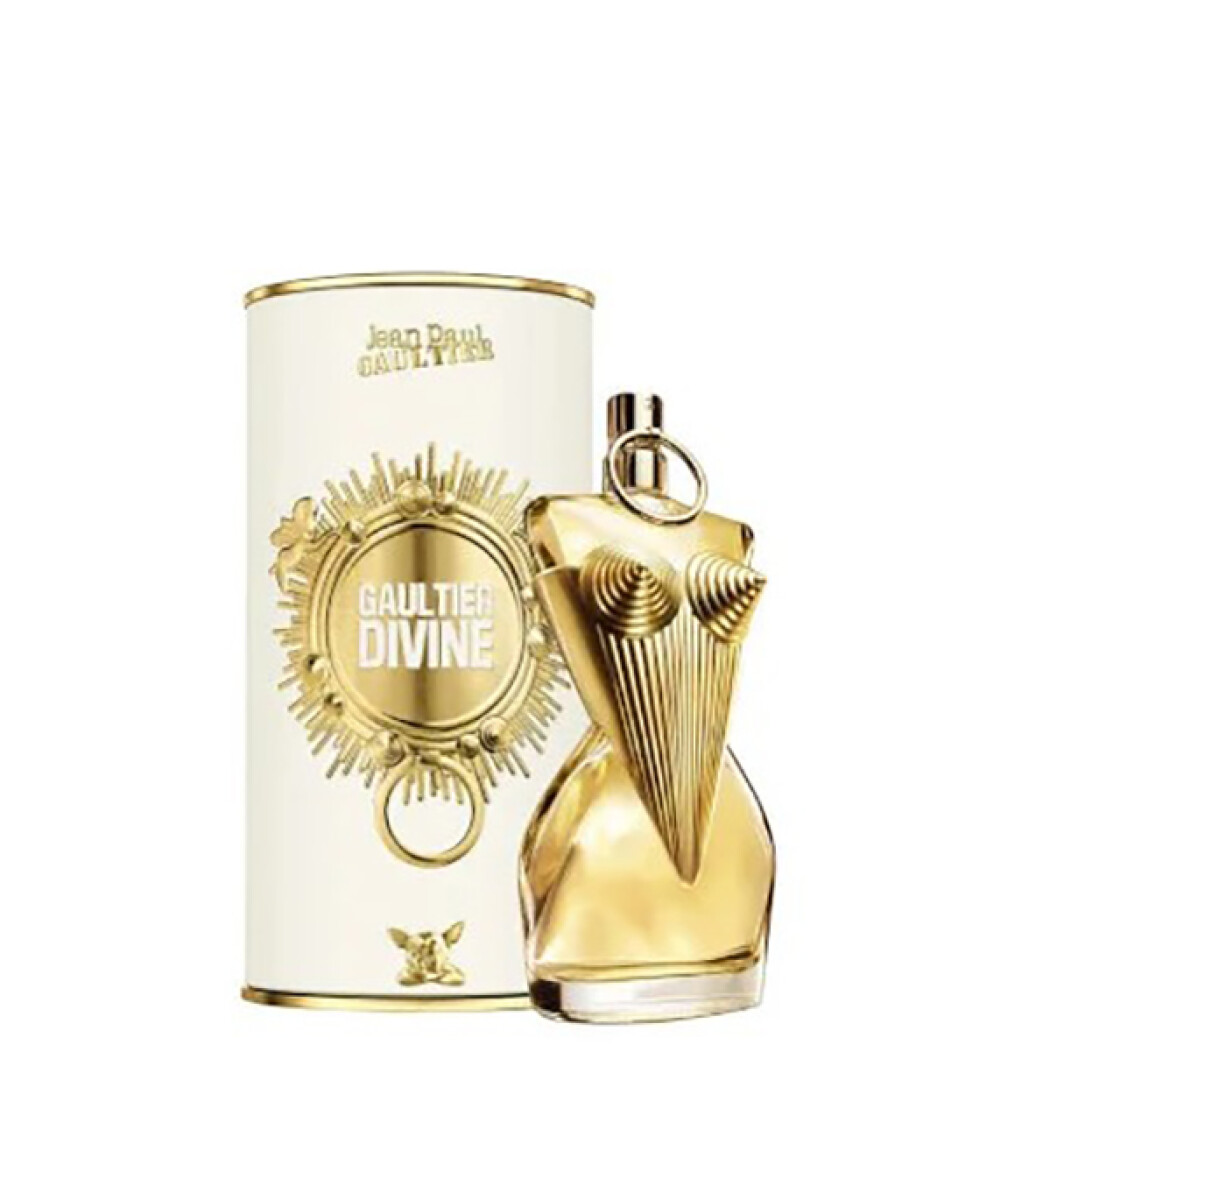 Jean Paul Gaultier Divine eau de parfum - 50 ml 